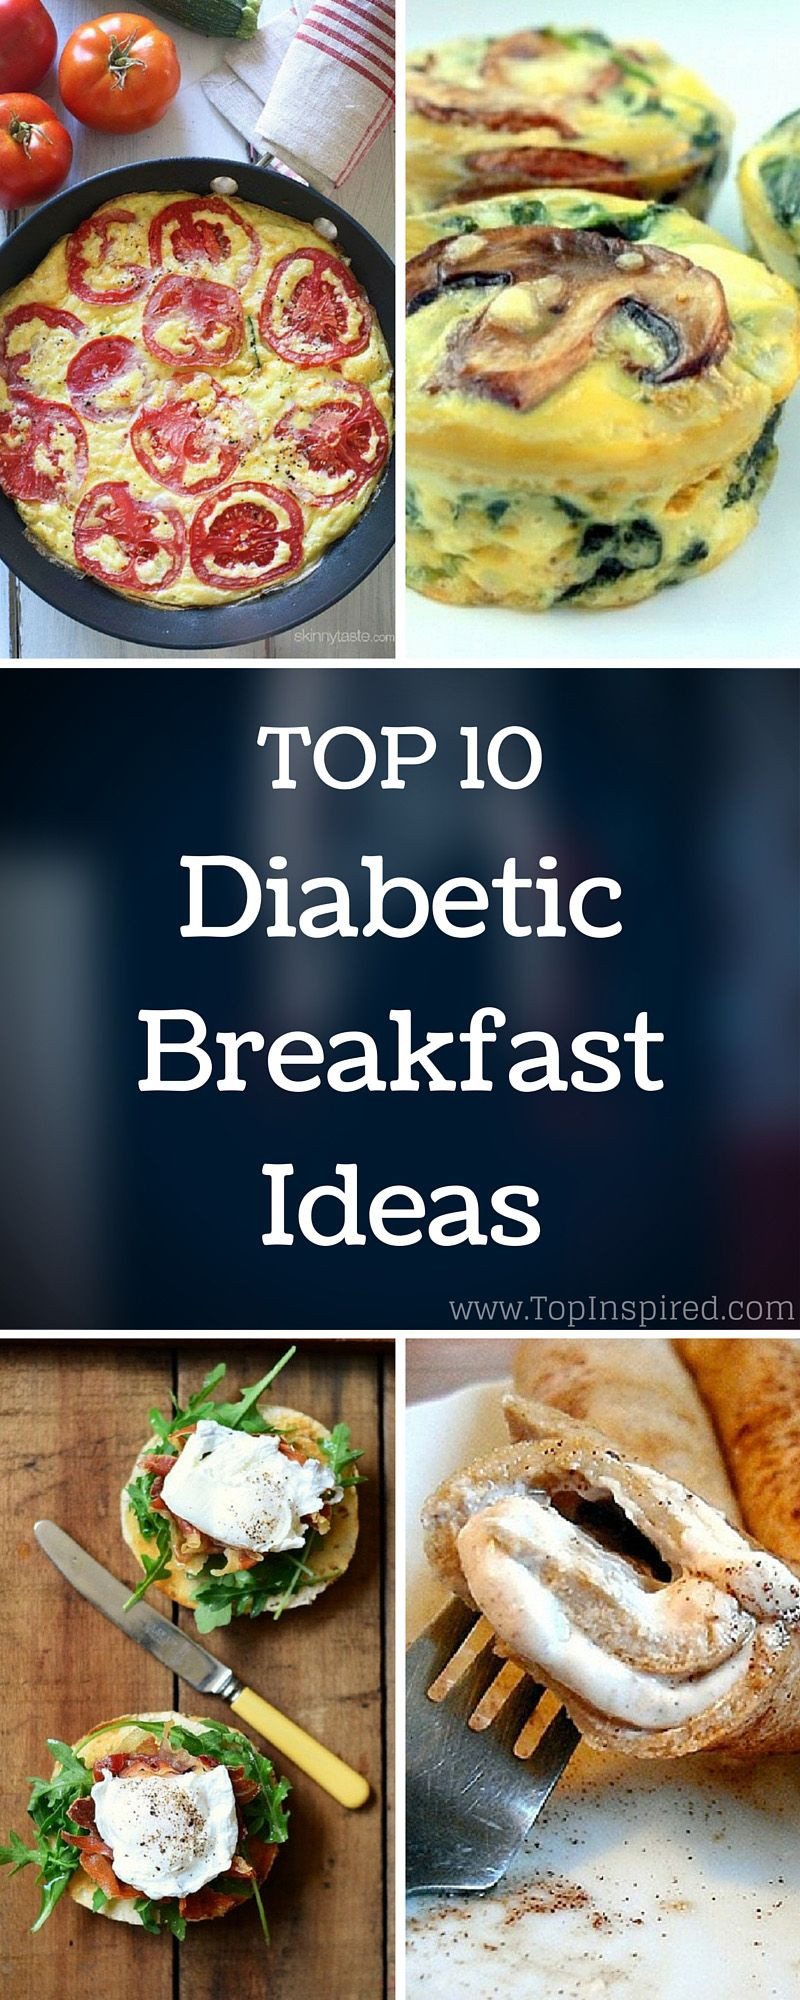 Breakfast Recipes For Diabetics
 Top 10 Diabetic Breakfast Ideas